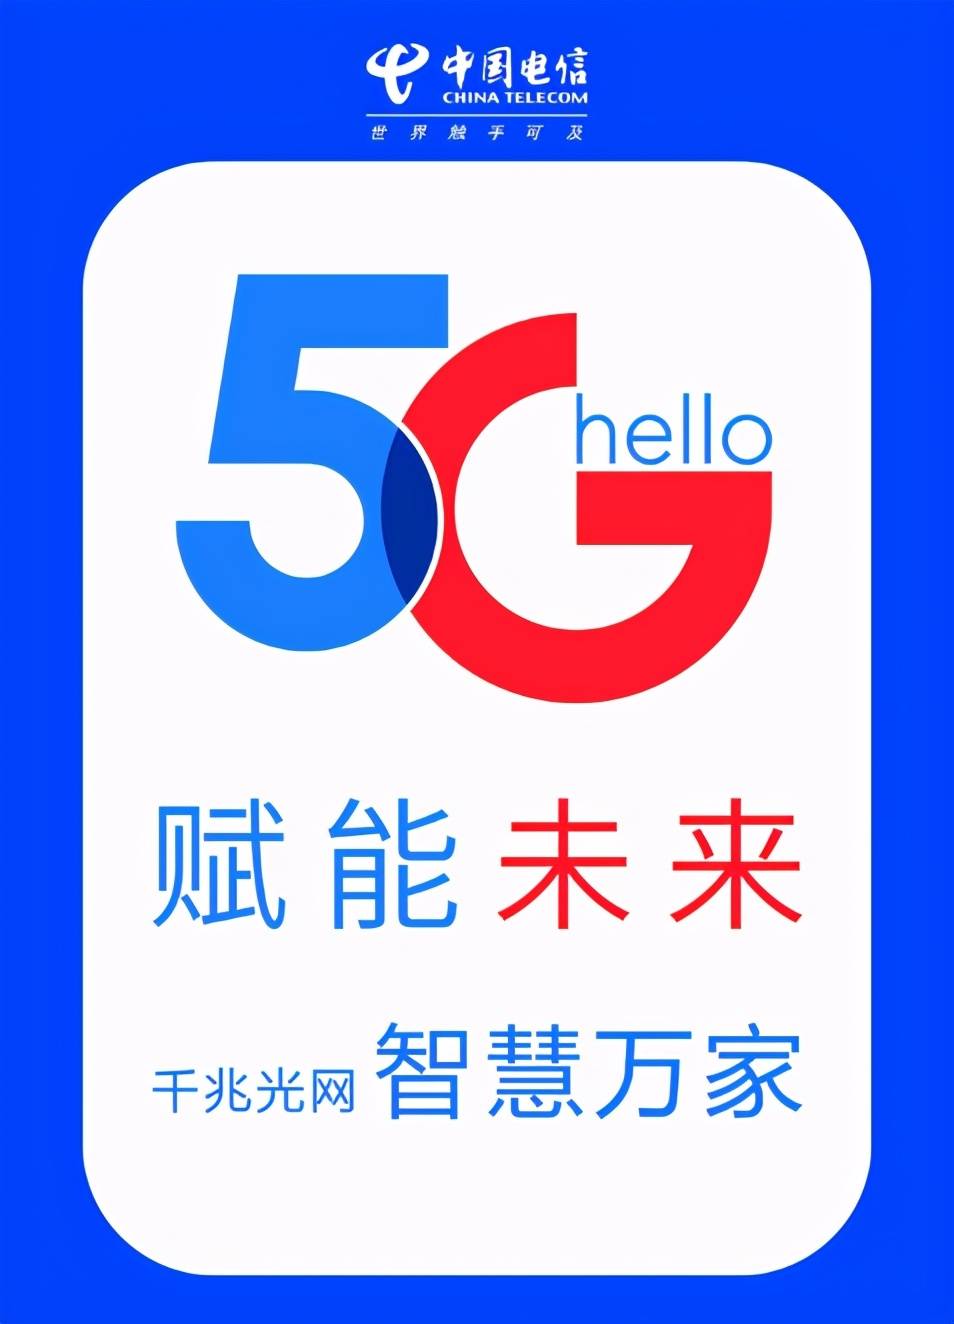 中国电信logo素材图片